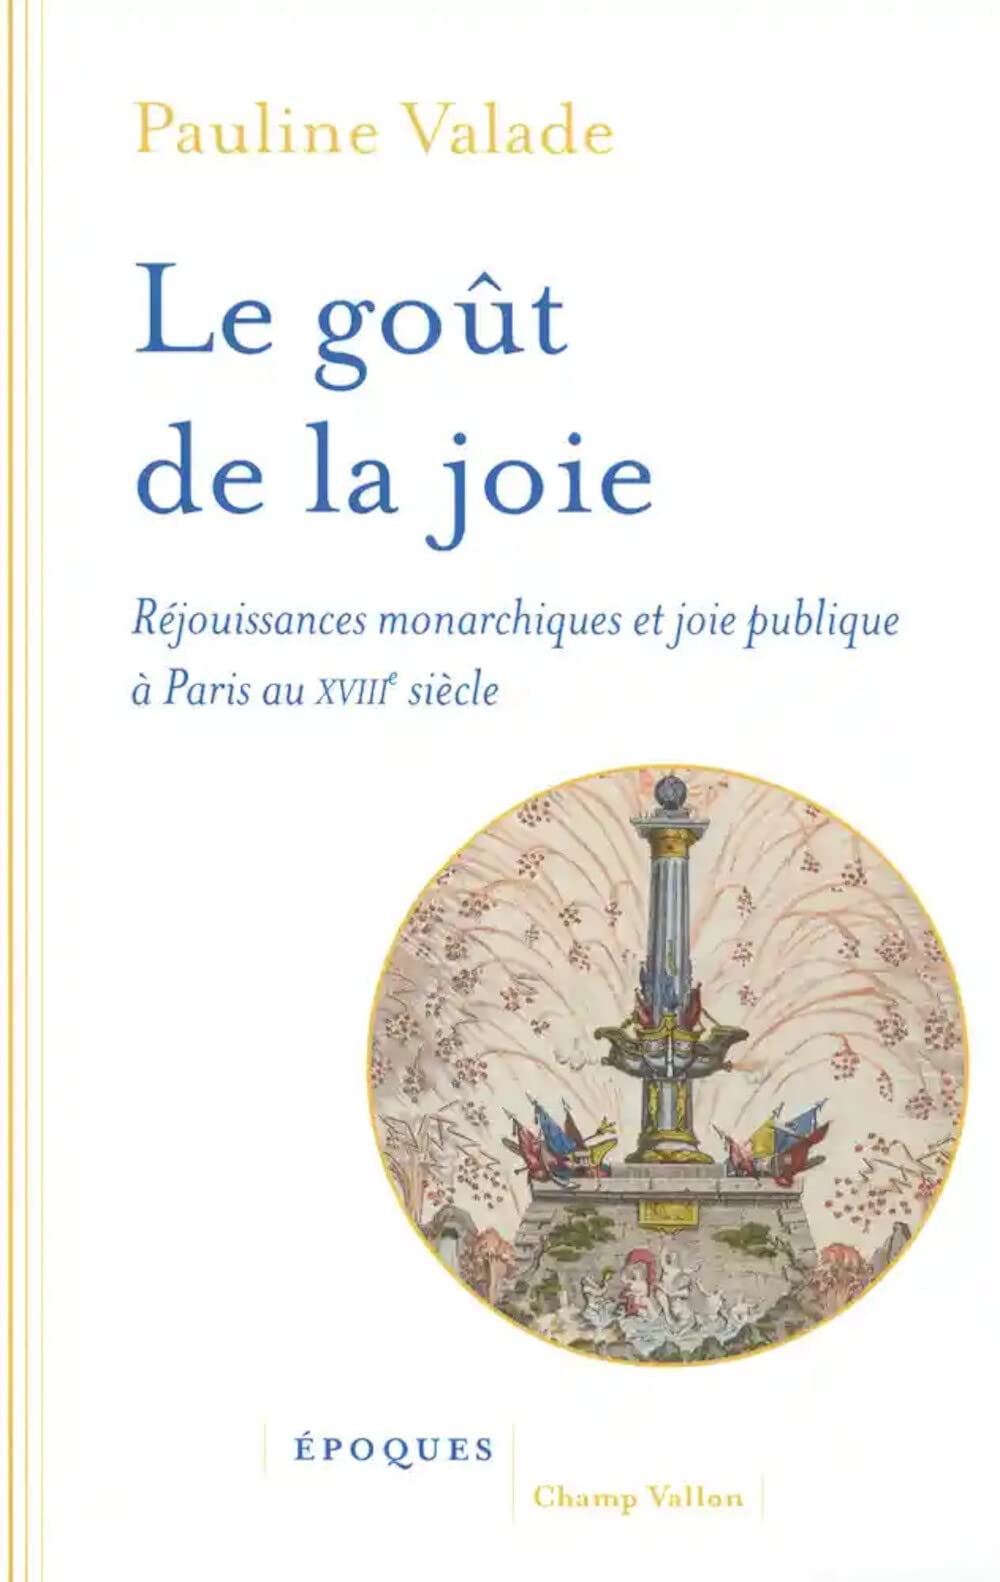 Le goût de la joie - Réjouissances monarchiques et joie publ: Réjouissances monarchiques et joie publique à Paris au XVIIIe siècle